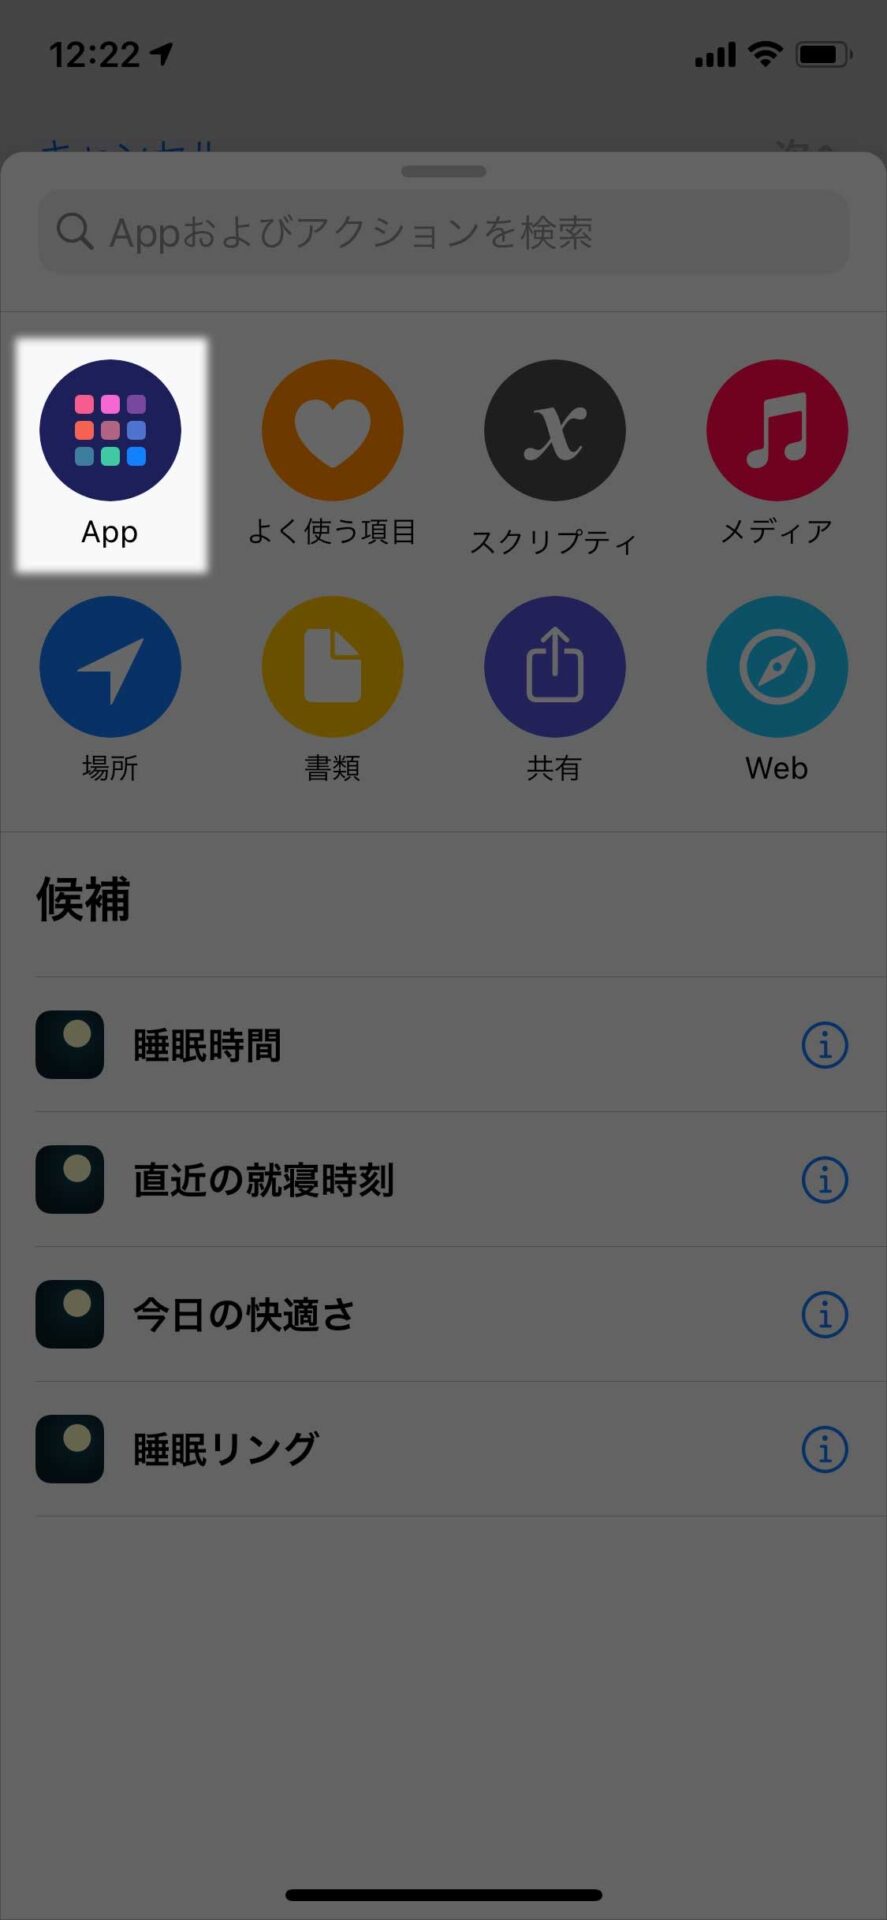 「App」のアイコンをタップ